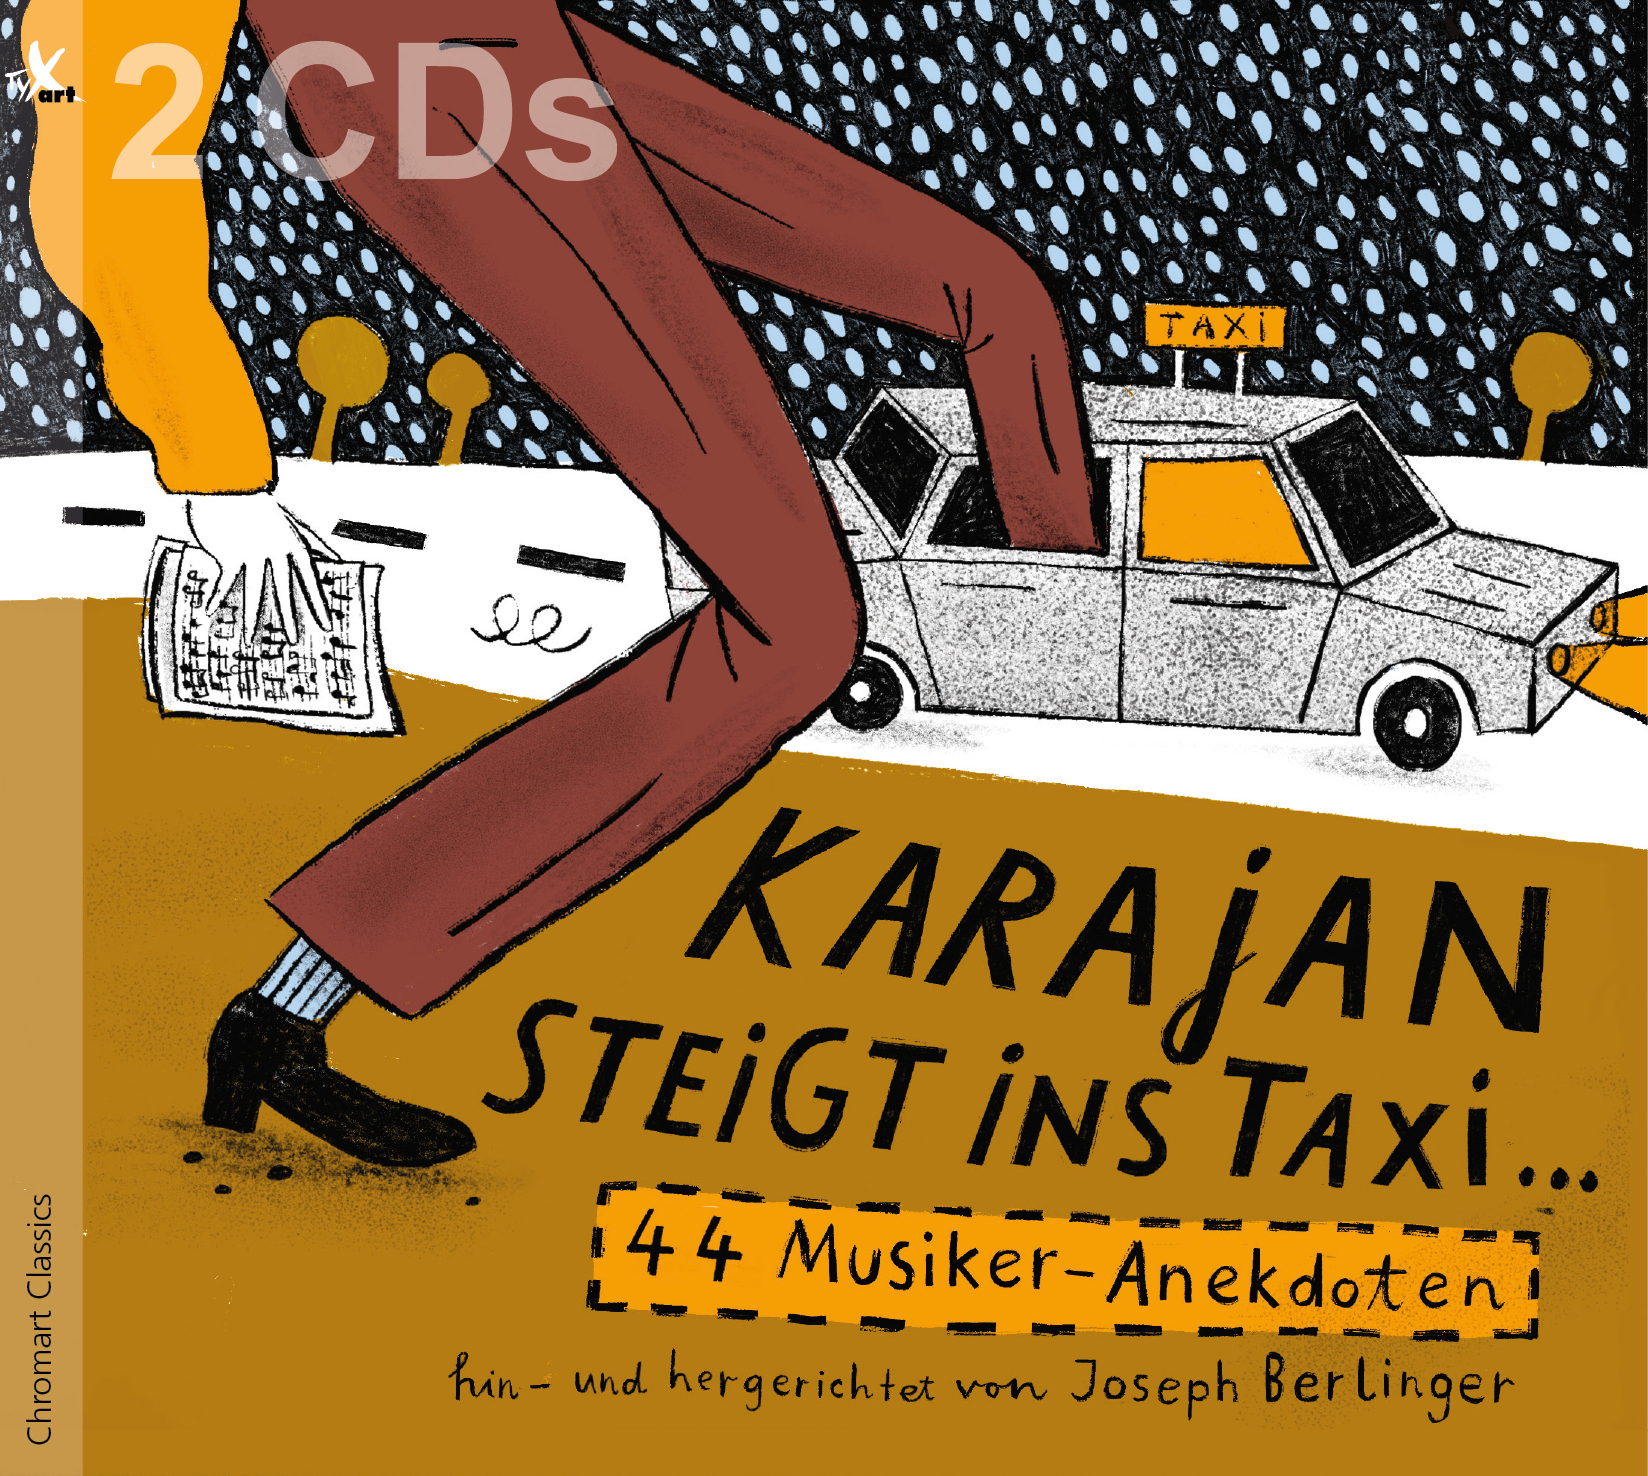 Karajan steigt ins Taxi ... 44 Musiker-Anekdoten